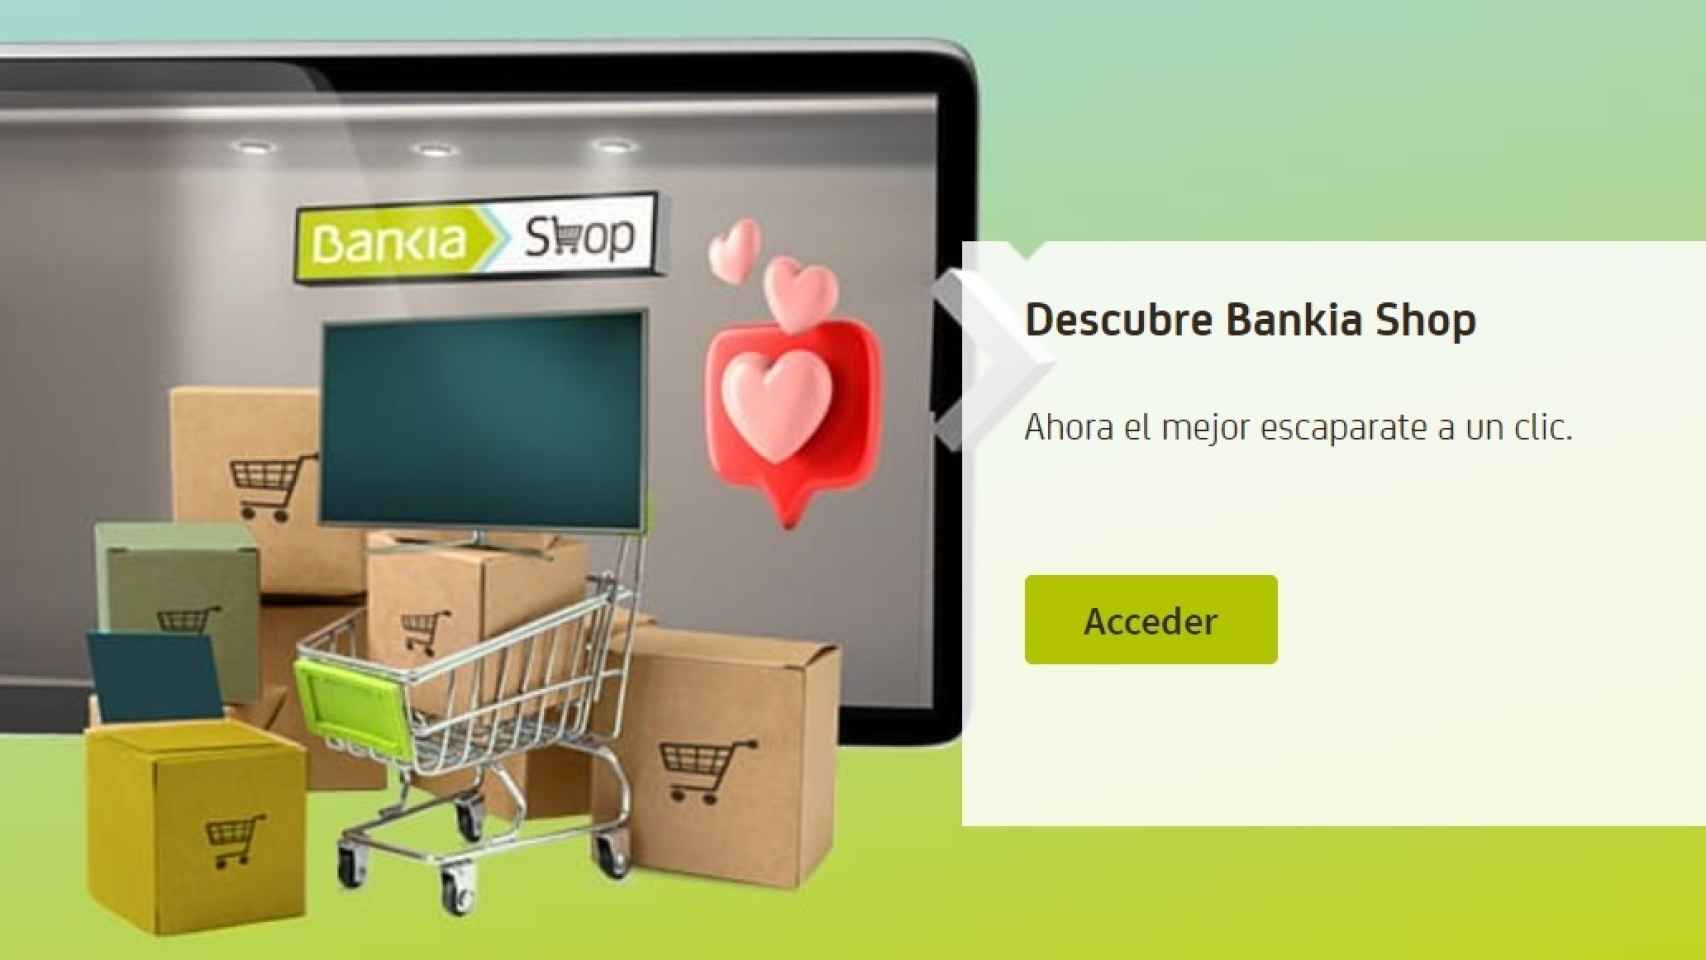 La tienda de productos de electrónica de Bankia, 'Bankia Shop'.